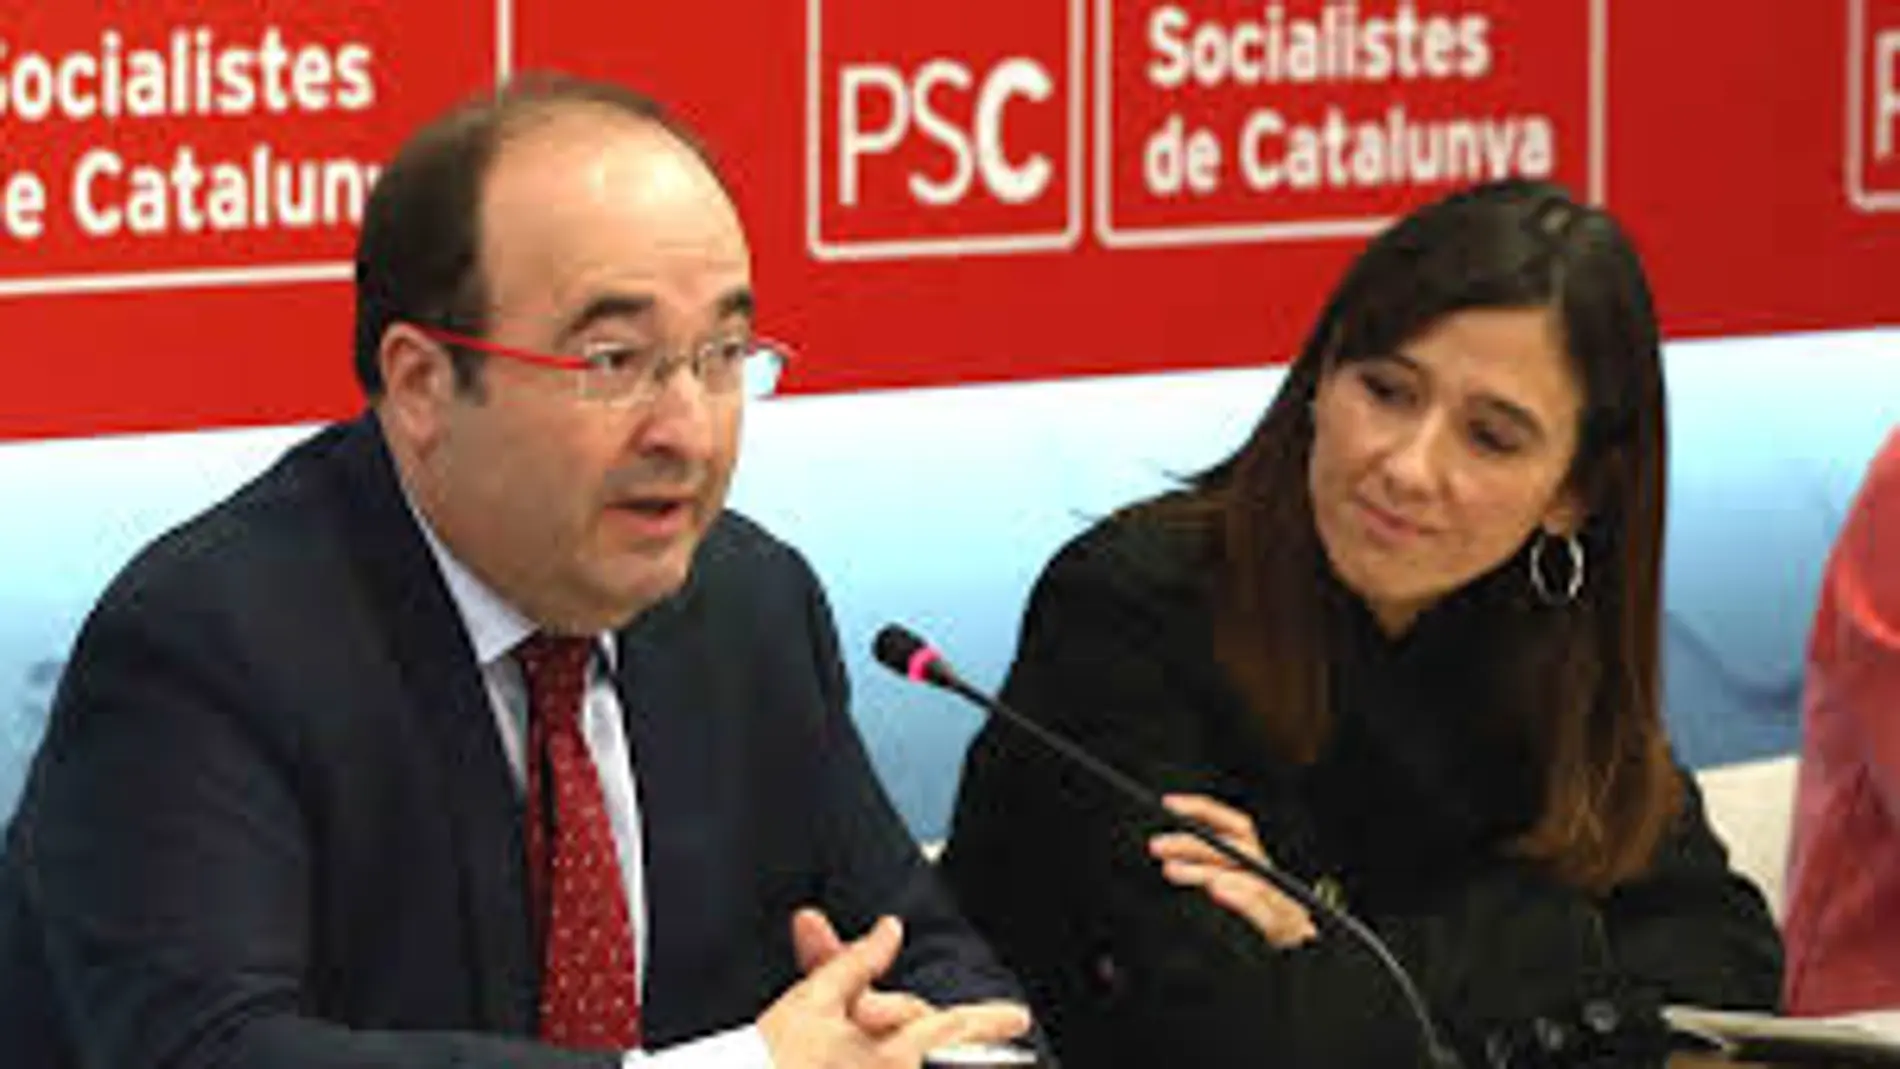 El PSC ha caído ocho puntos más que el PSOE